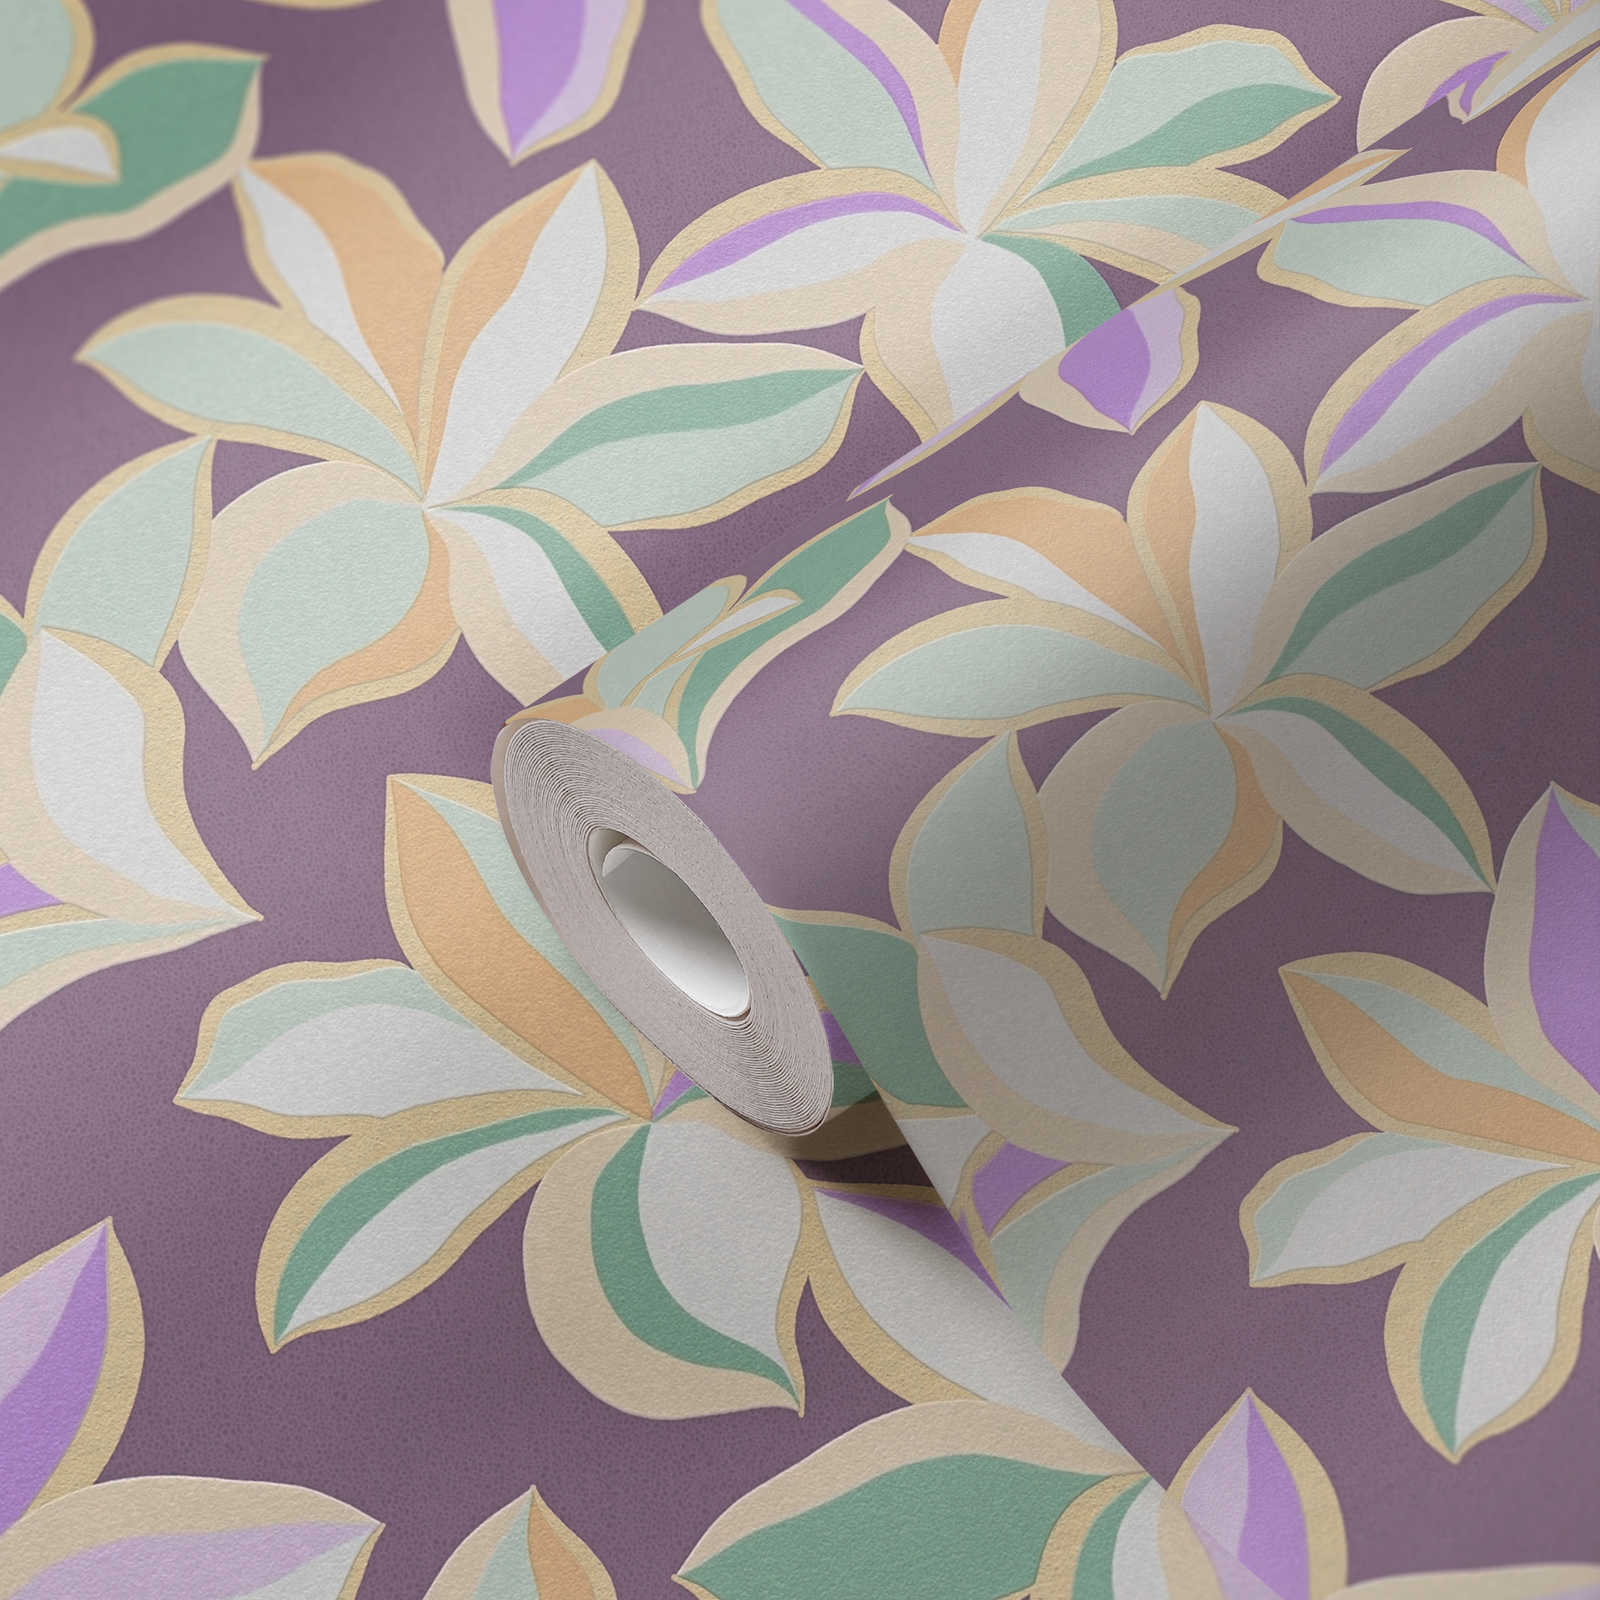             Blumentapete mit glänzendem Muster – Lila, Gold, Grün
        